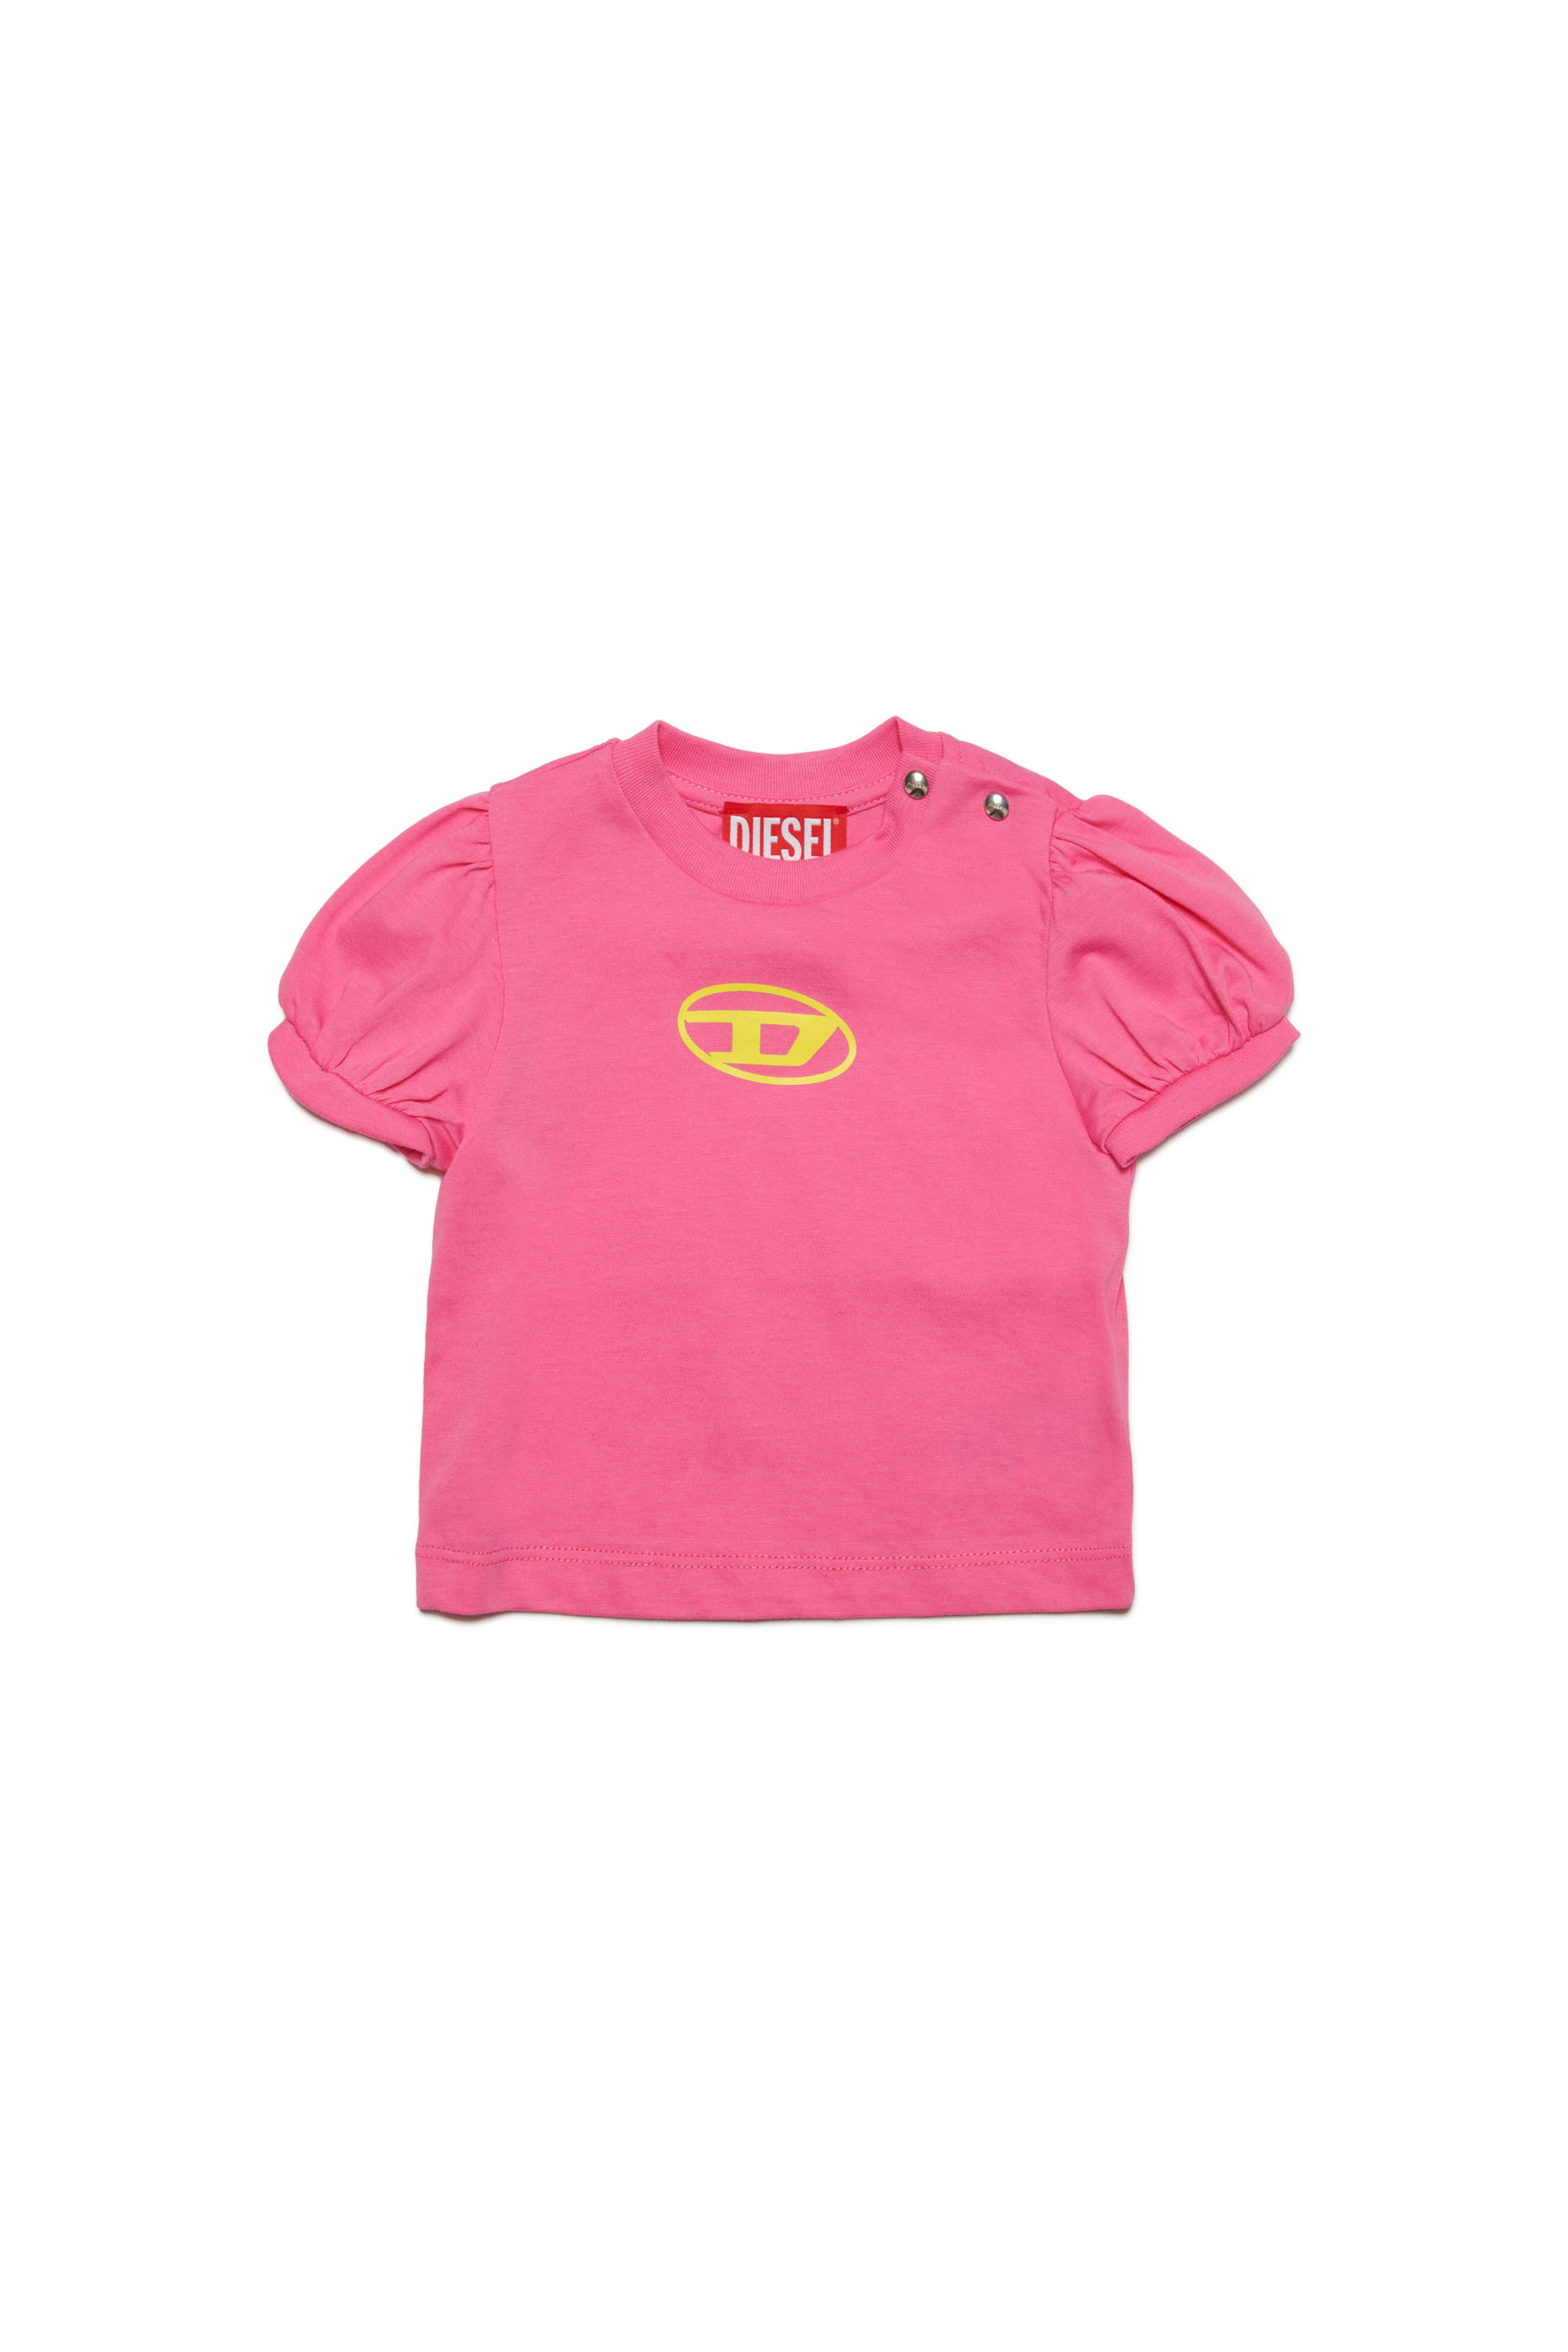 Diesel - T-shirt à manches bouffantes avec Oval D - T-shirts et Hauts - Femme - Rose